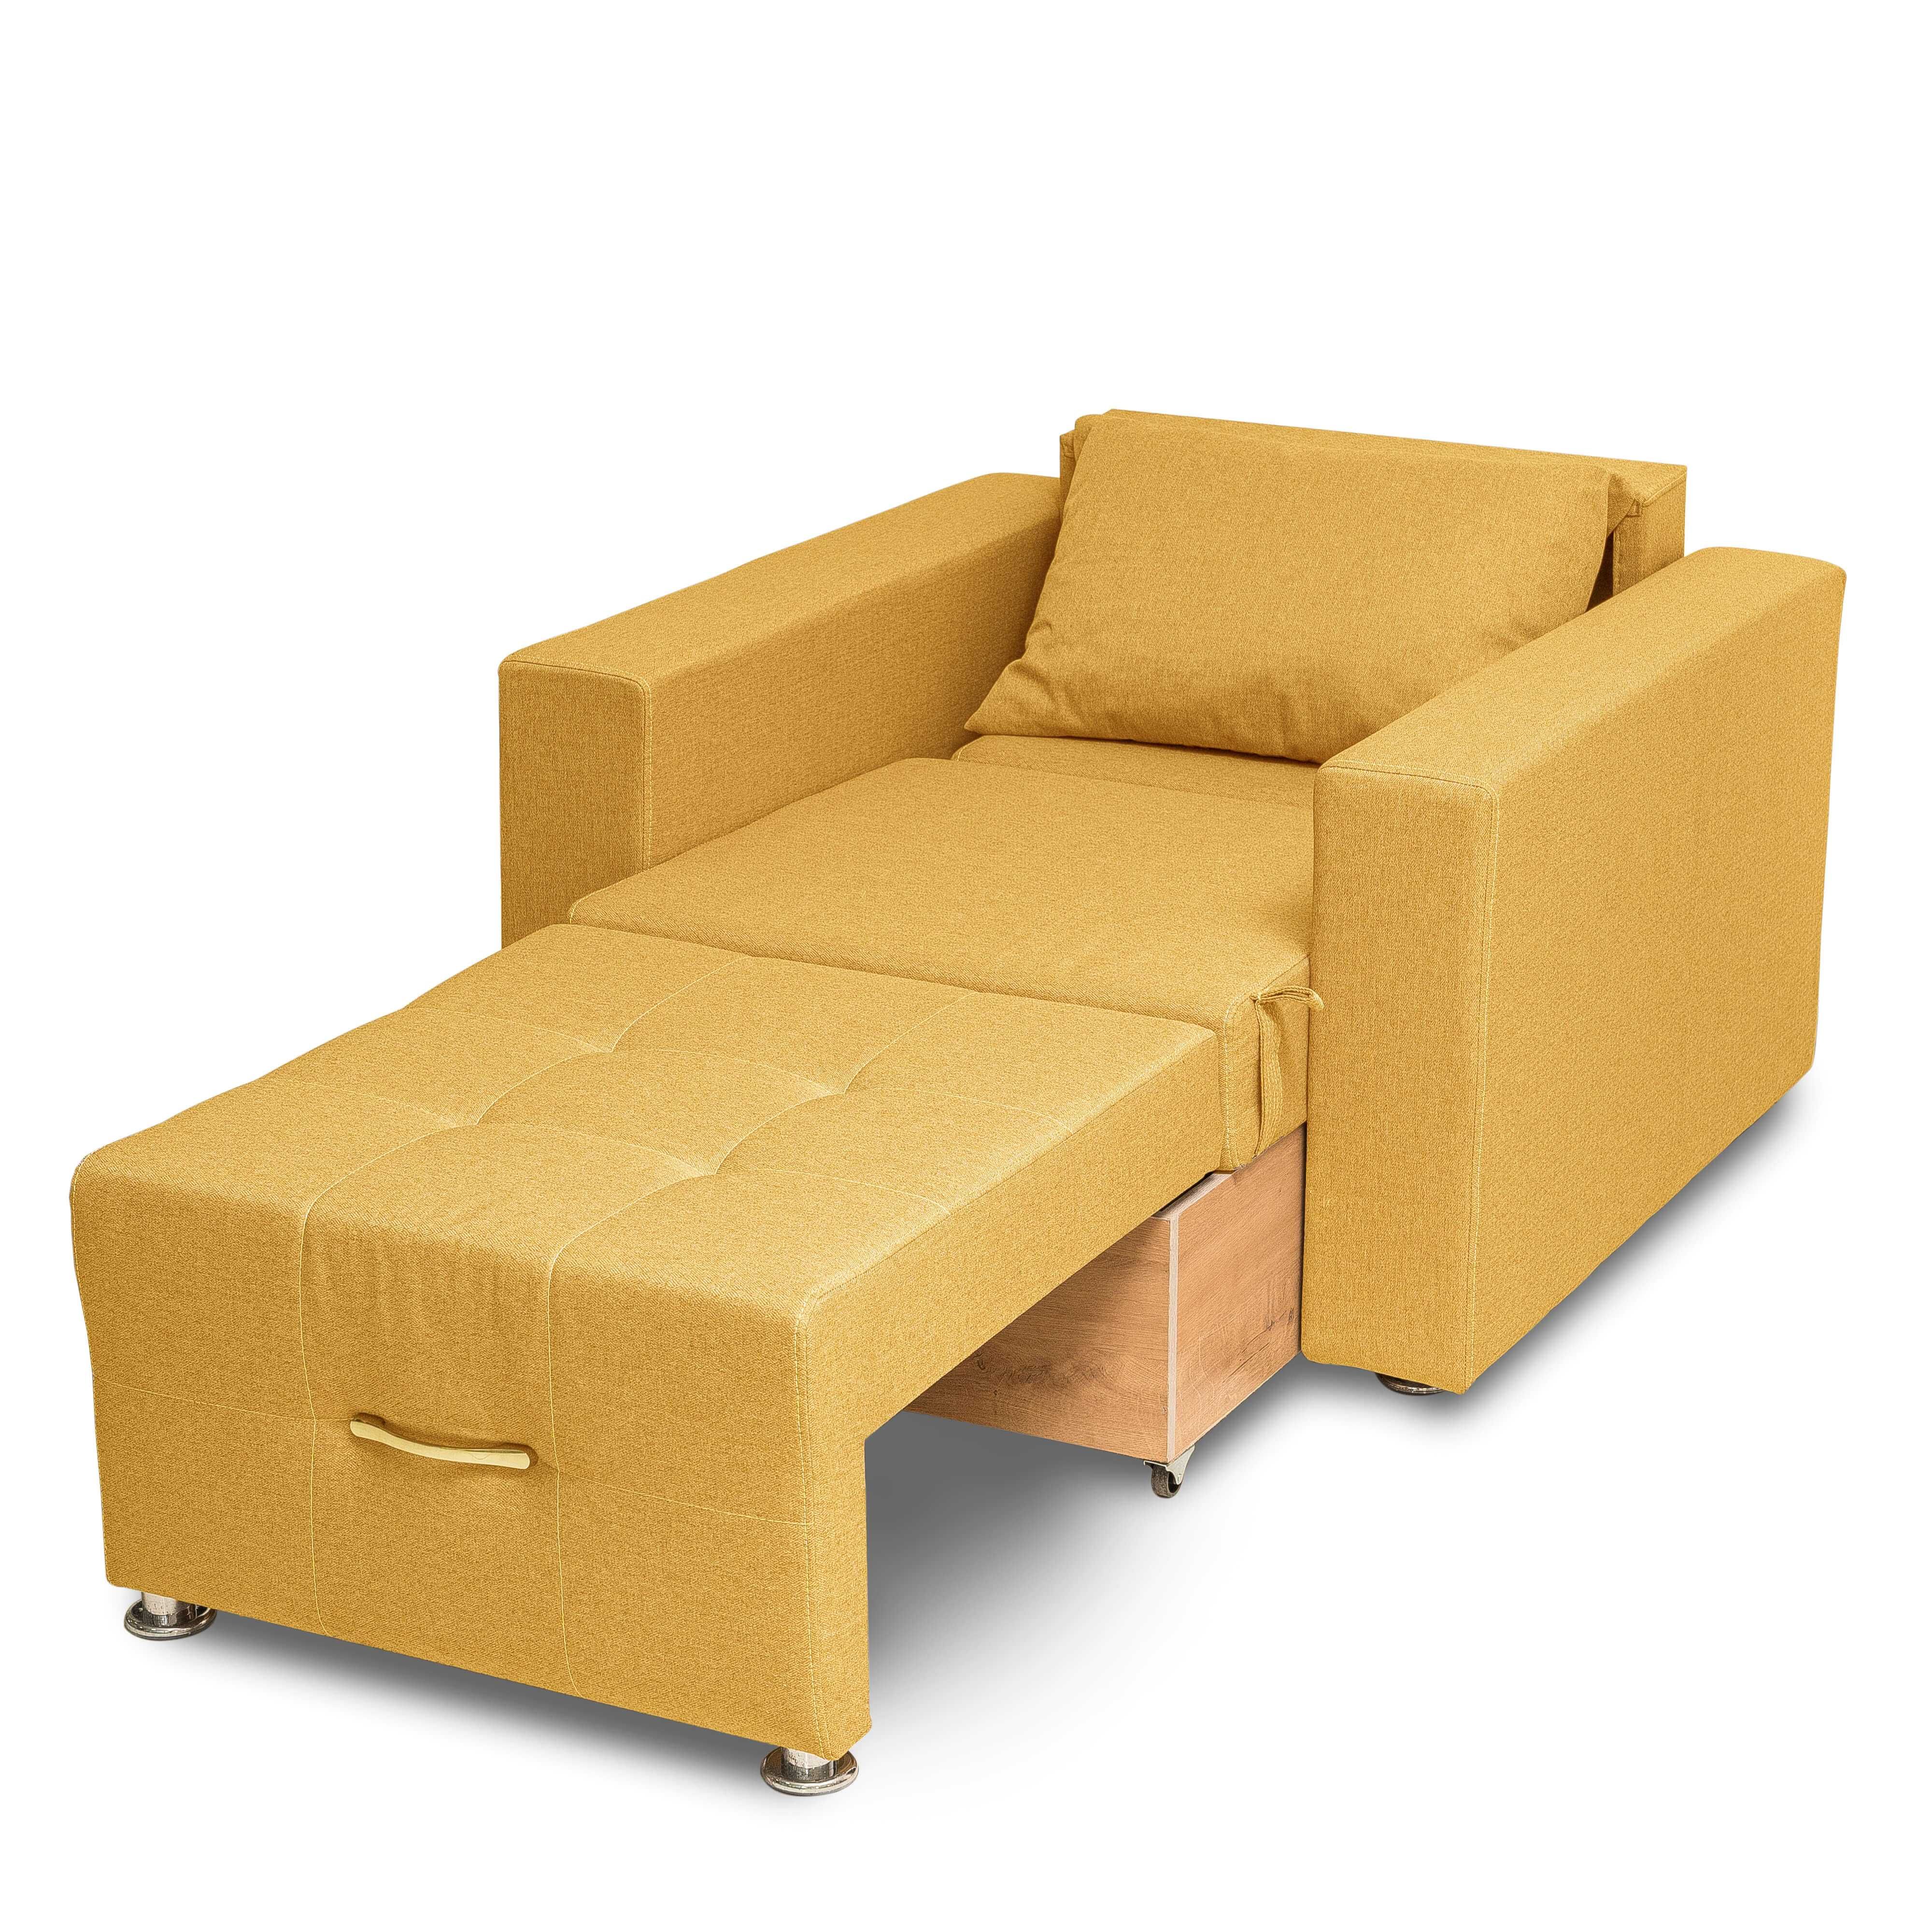 Кресло кровать Атлант горчичный кушетка диван Доставка  бесплатно